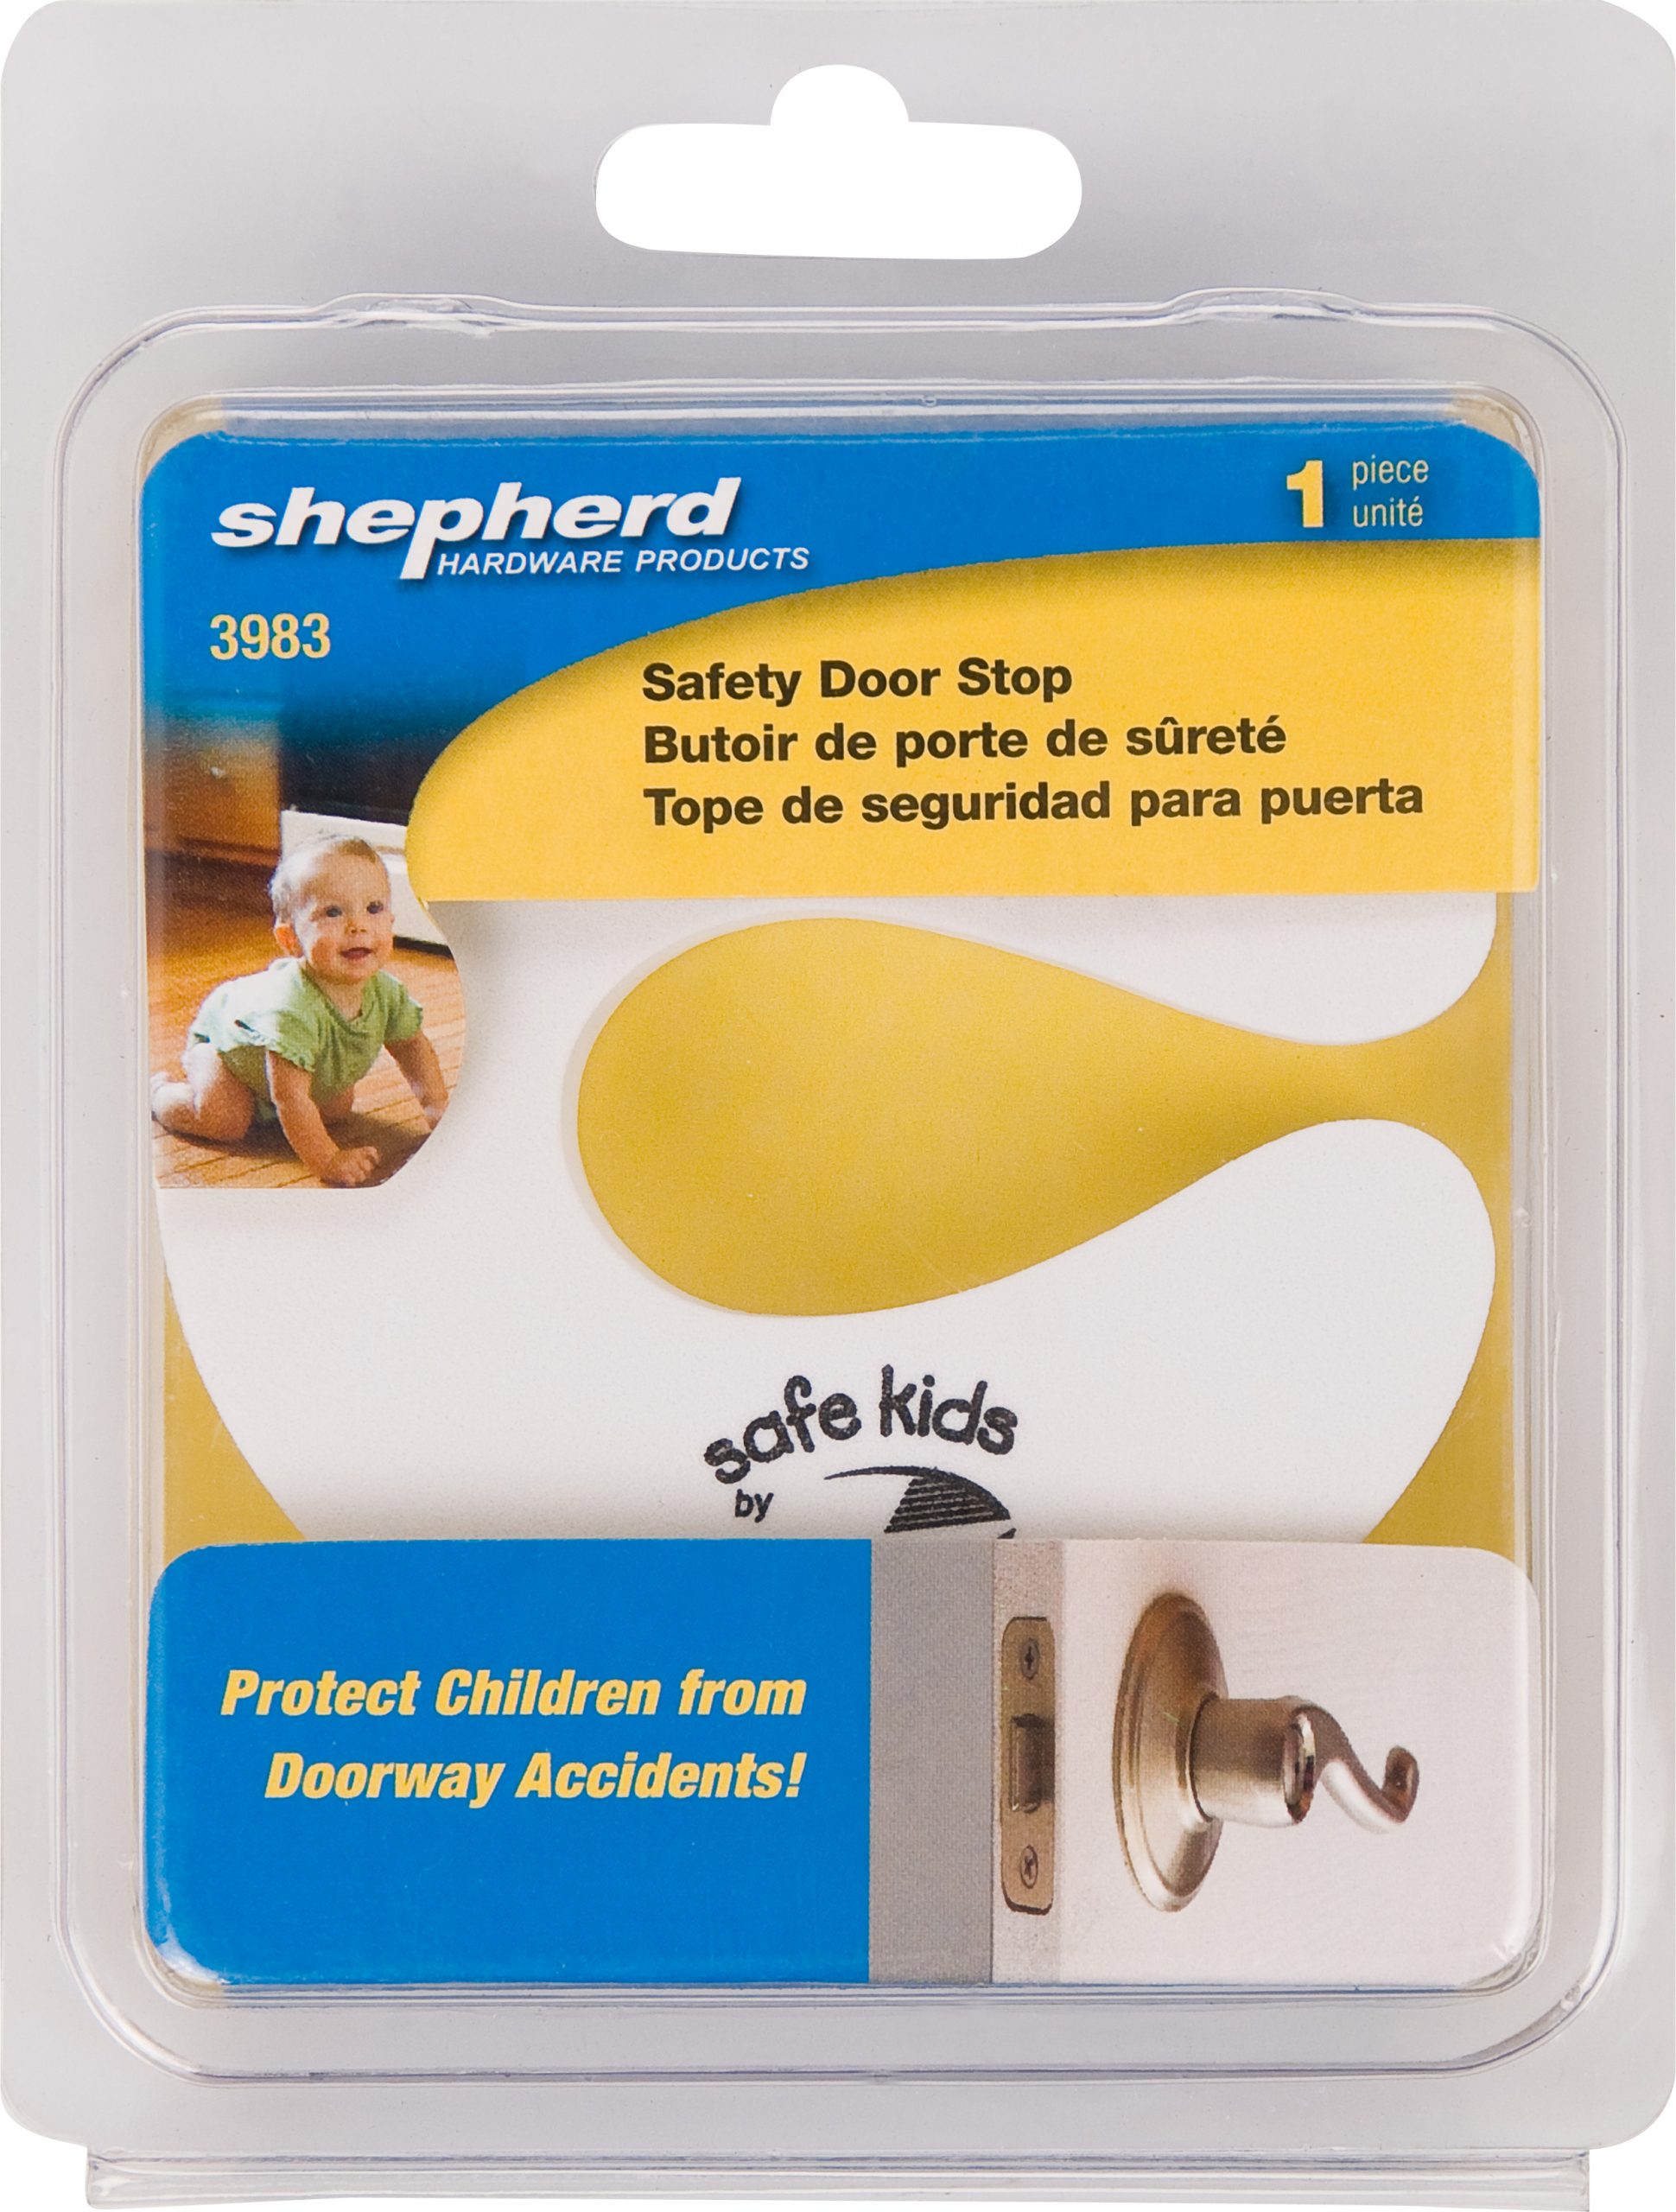 SAFE KIDS SAFETY DOOR STOP, 1-pack